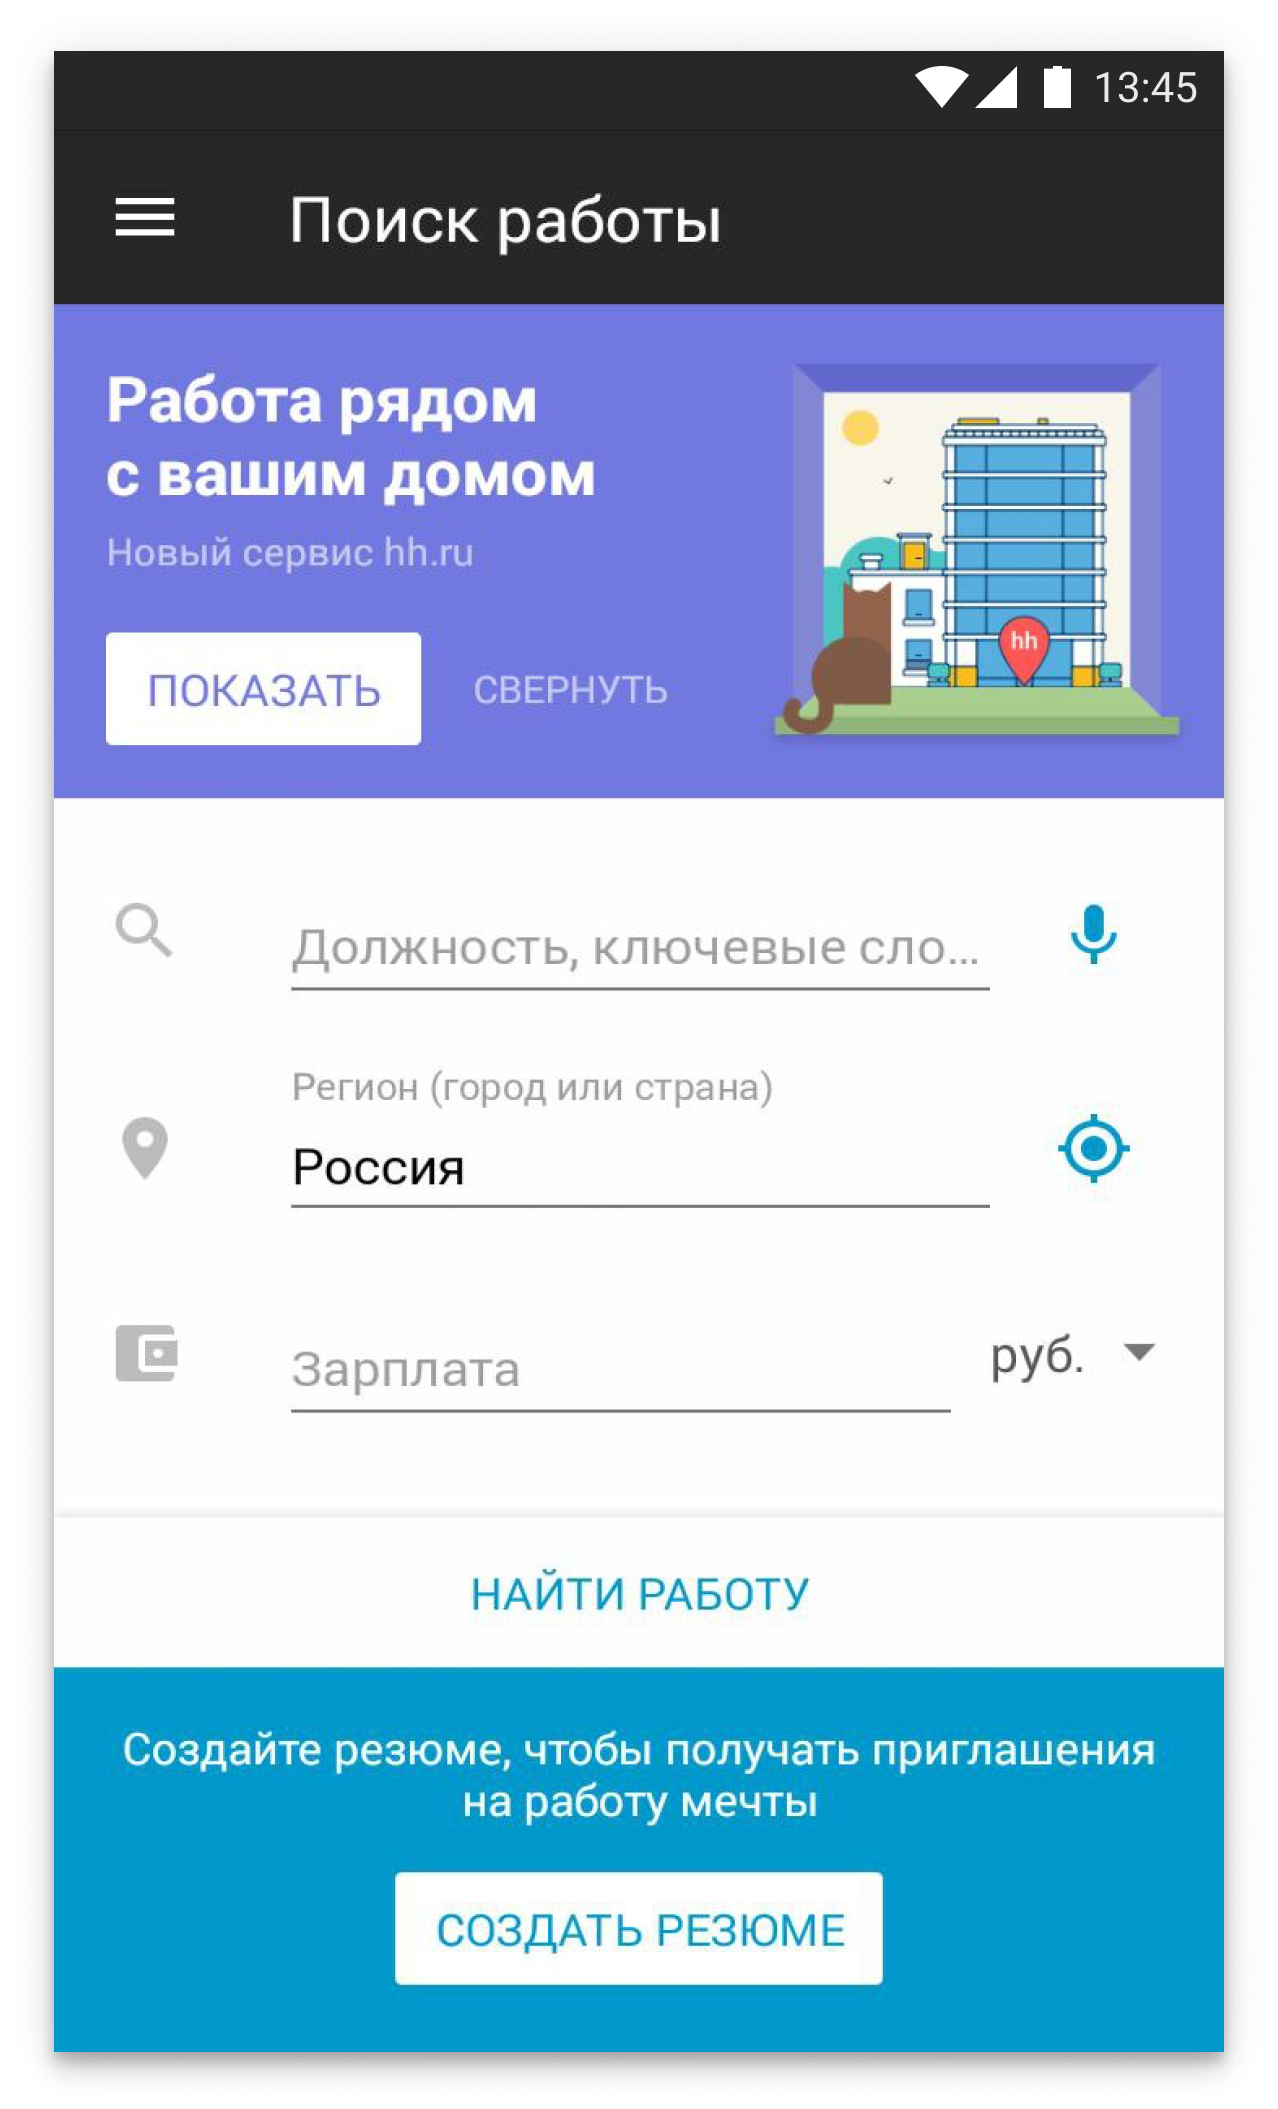 Приложение hh.ru для поиска работы, Android, образец 2018 года